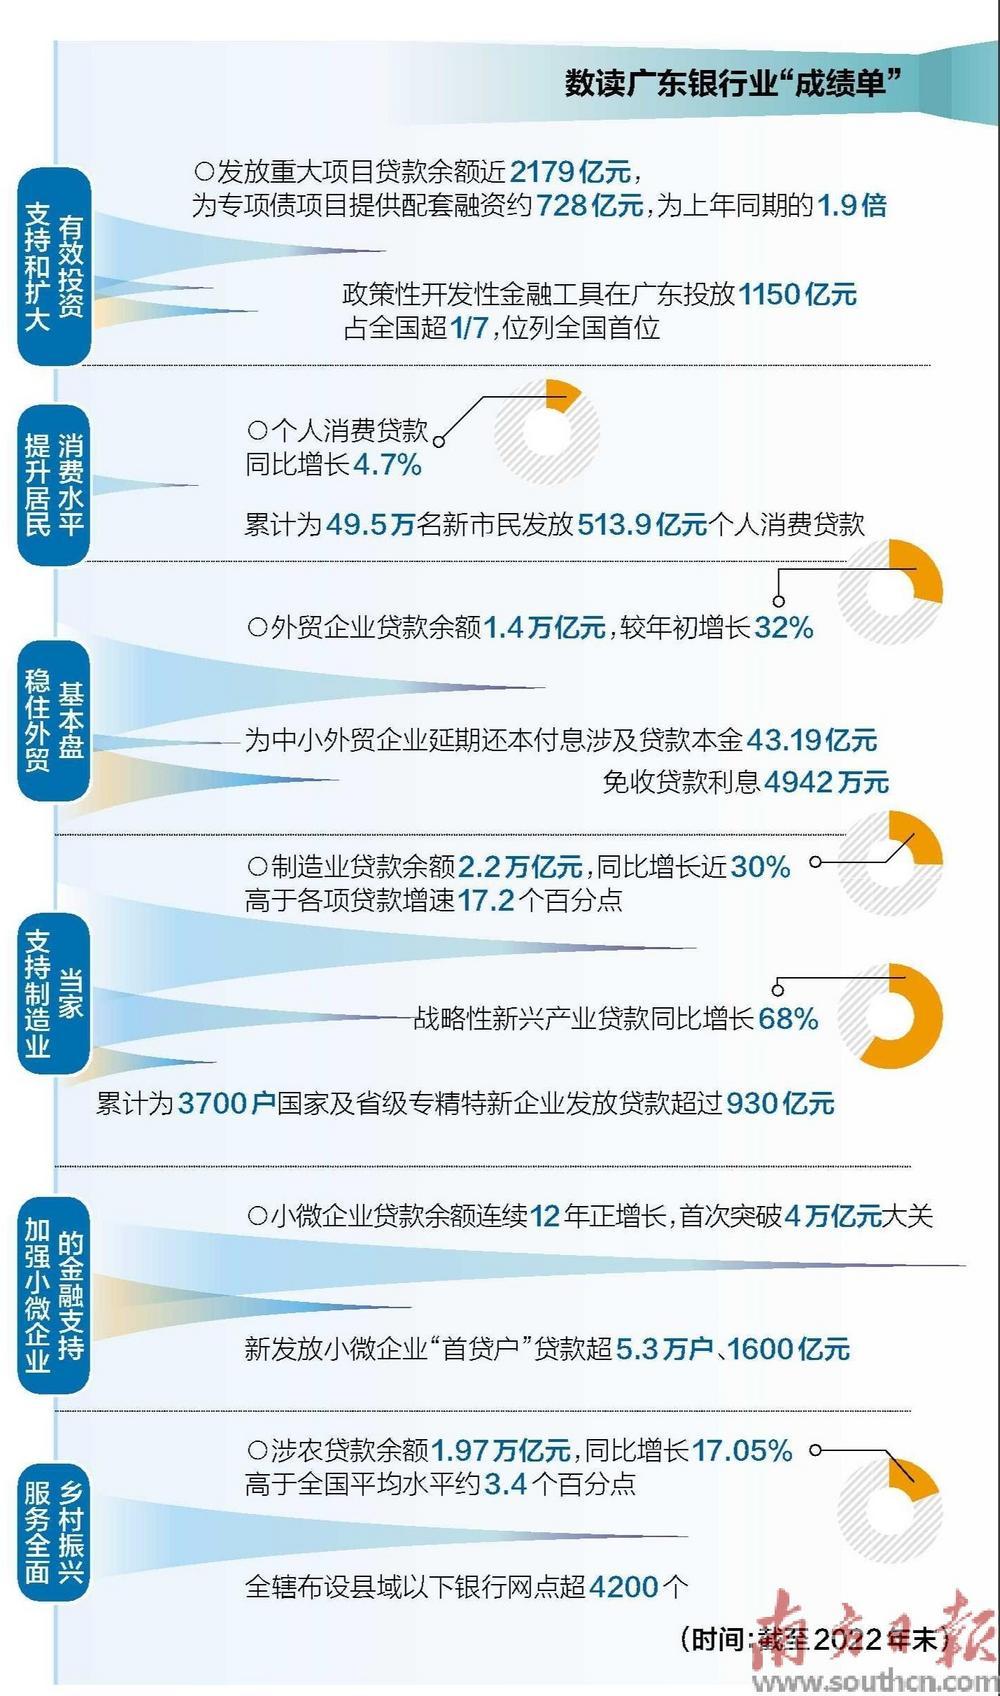 广东小微企业贷款余额首破4万亿